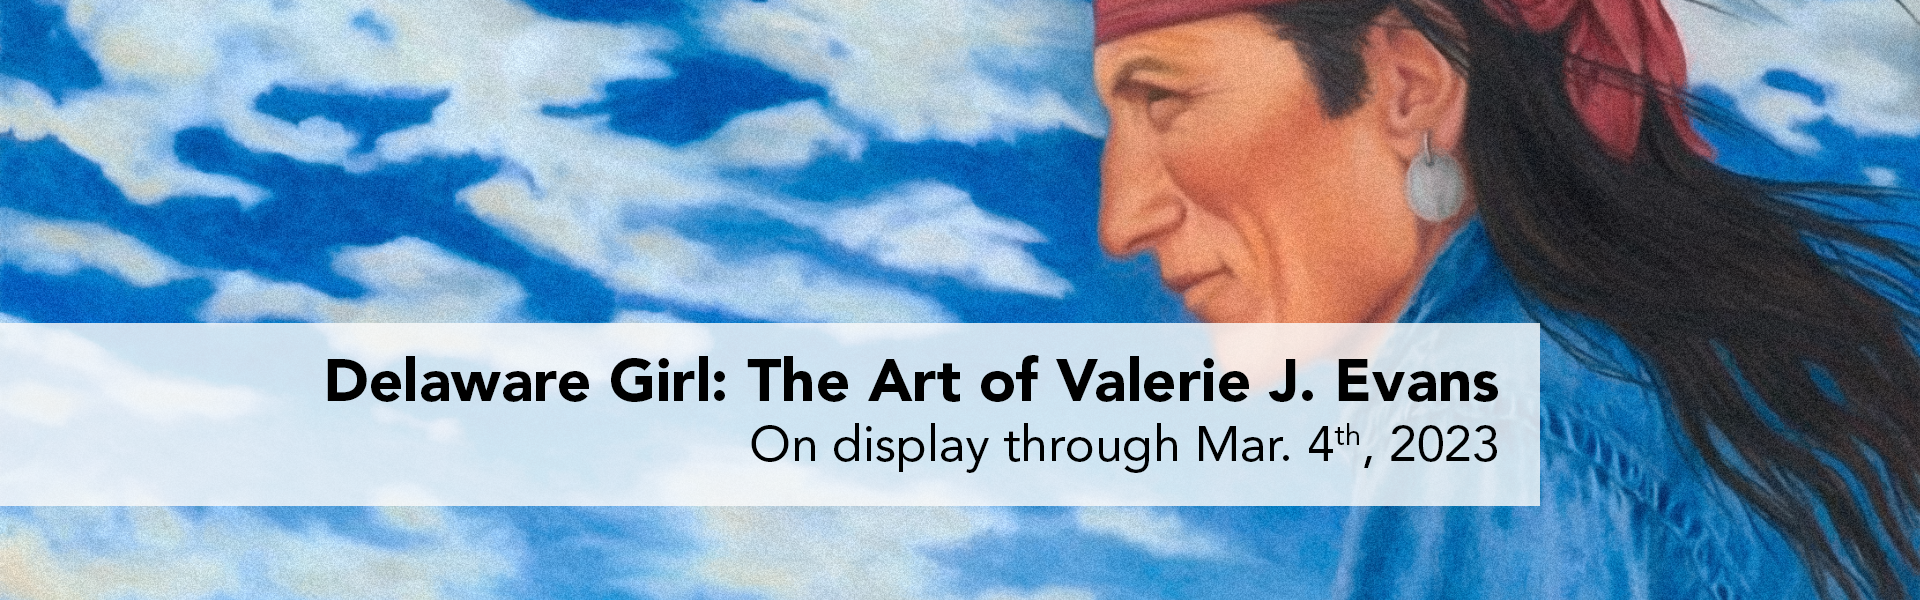 Delaware Girl: The Art of Valerie J. Evans